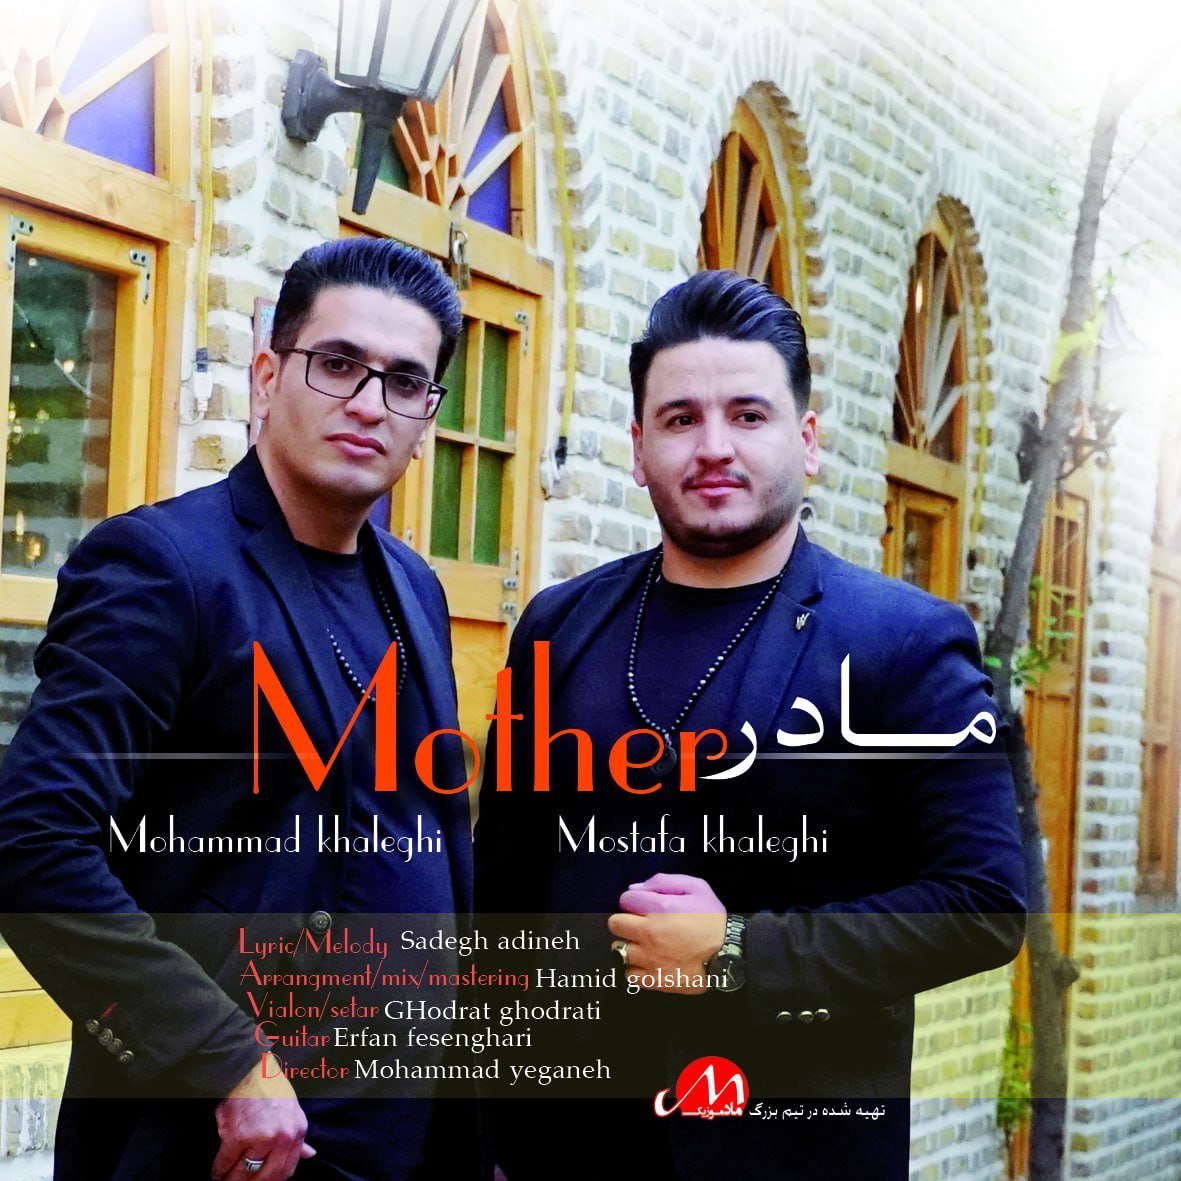 دانلود آهنگ جدید محمد و مصطفی خالقی با عنوان مادر